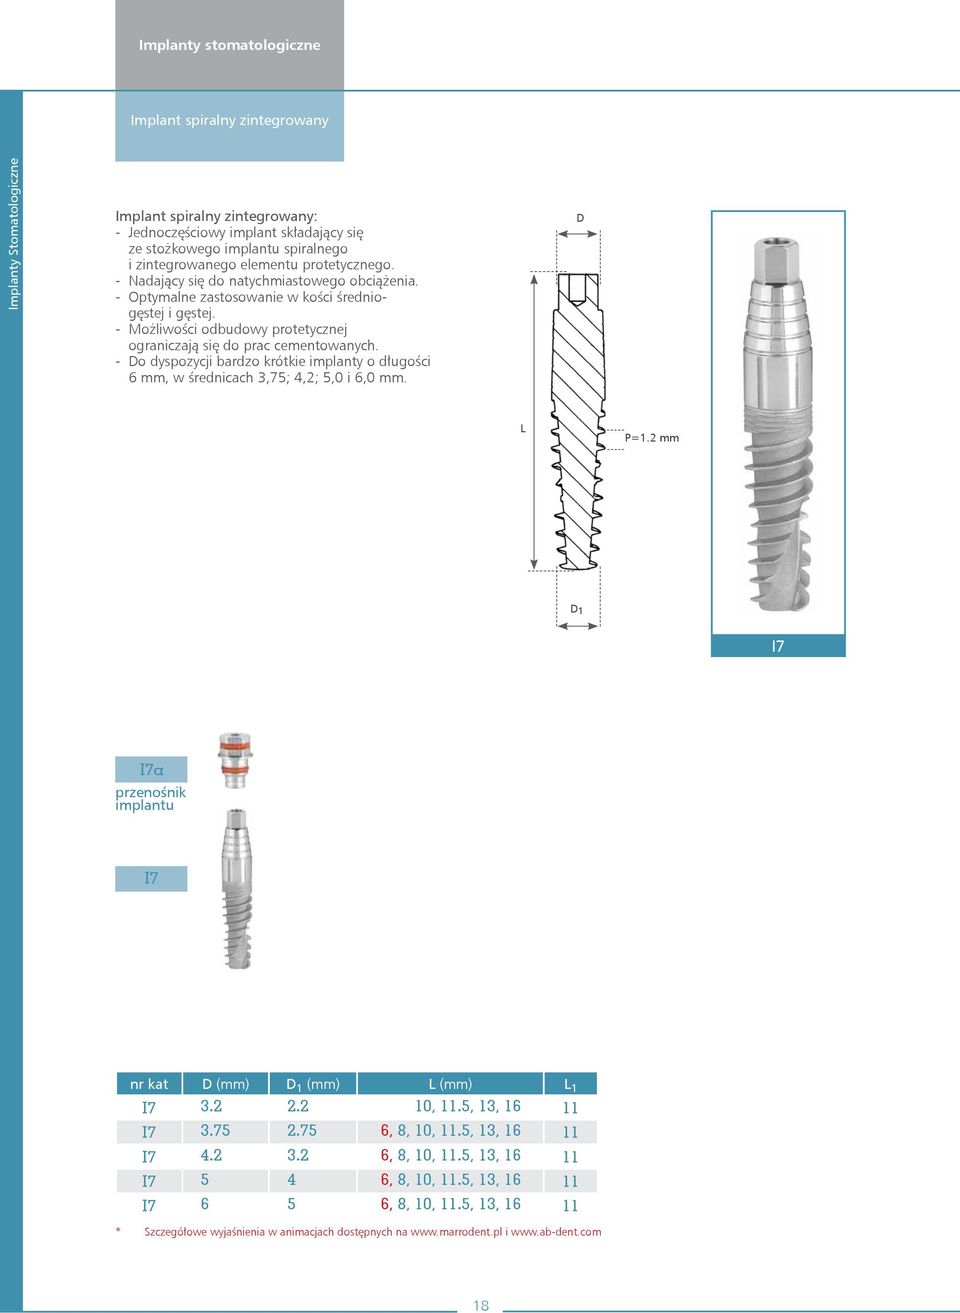 - Możliwości odbudowy protetycznej ograniczają się do prac cementowanych. - o dyspozycji bardzo krótkie implanty o długości 6 mm, w średnicach 3,75; 4,2; 5,0 i 6,0 mm. L P=1.